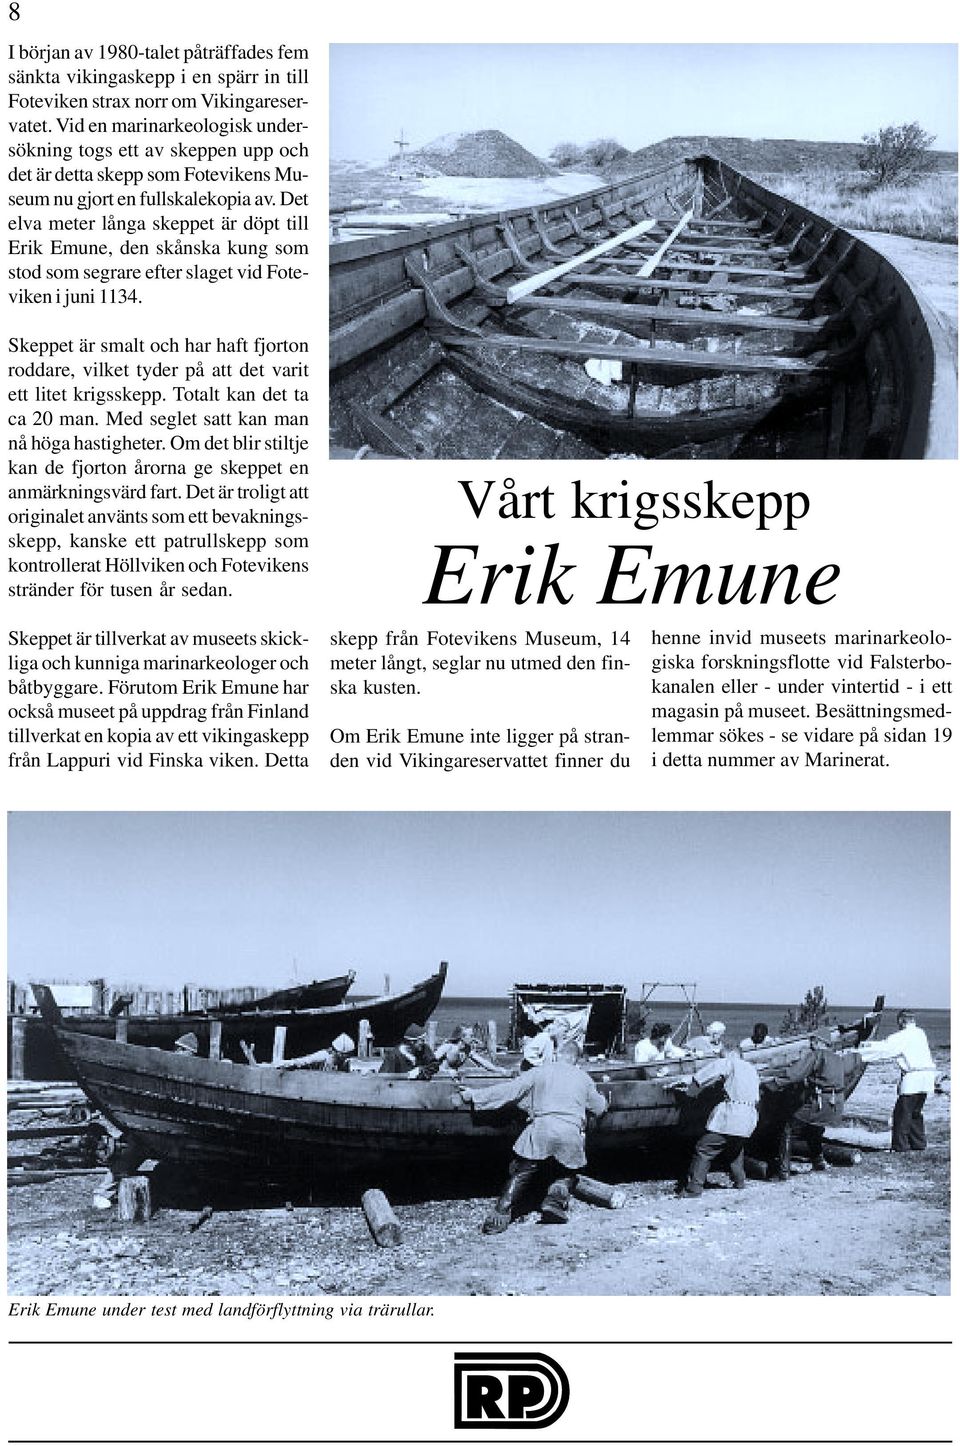 Det elva meter långa skeppet är döpt till Erik Emune, den skånska kung som stod som segrare efter slaget vid Foteviken i juni 1134.